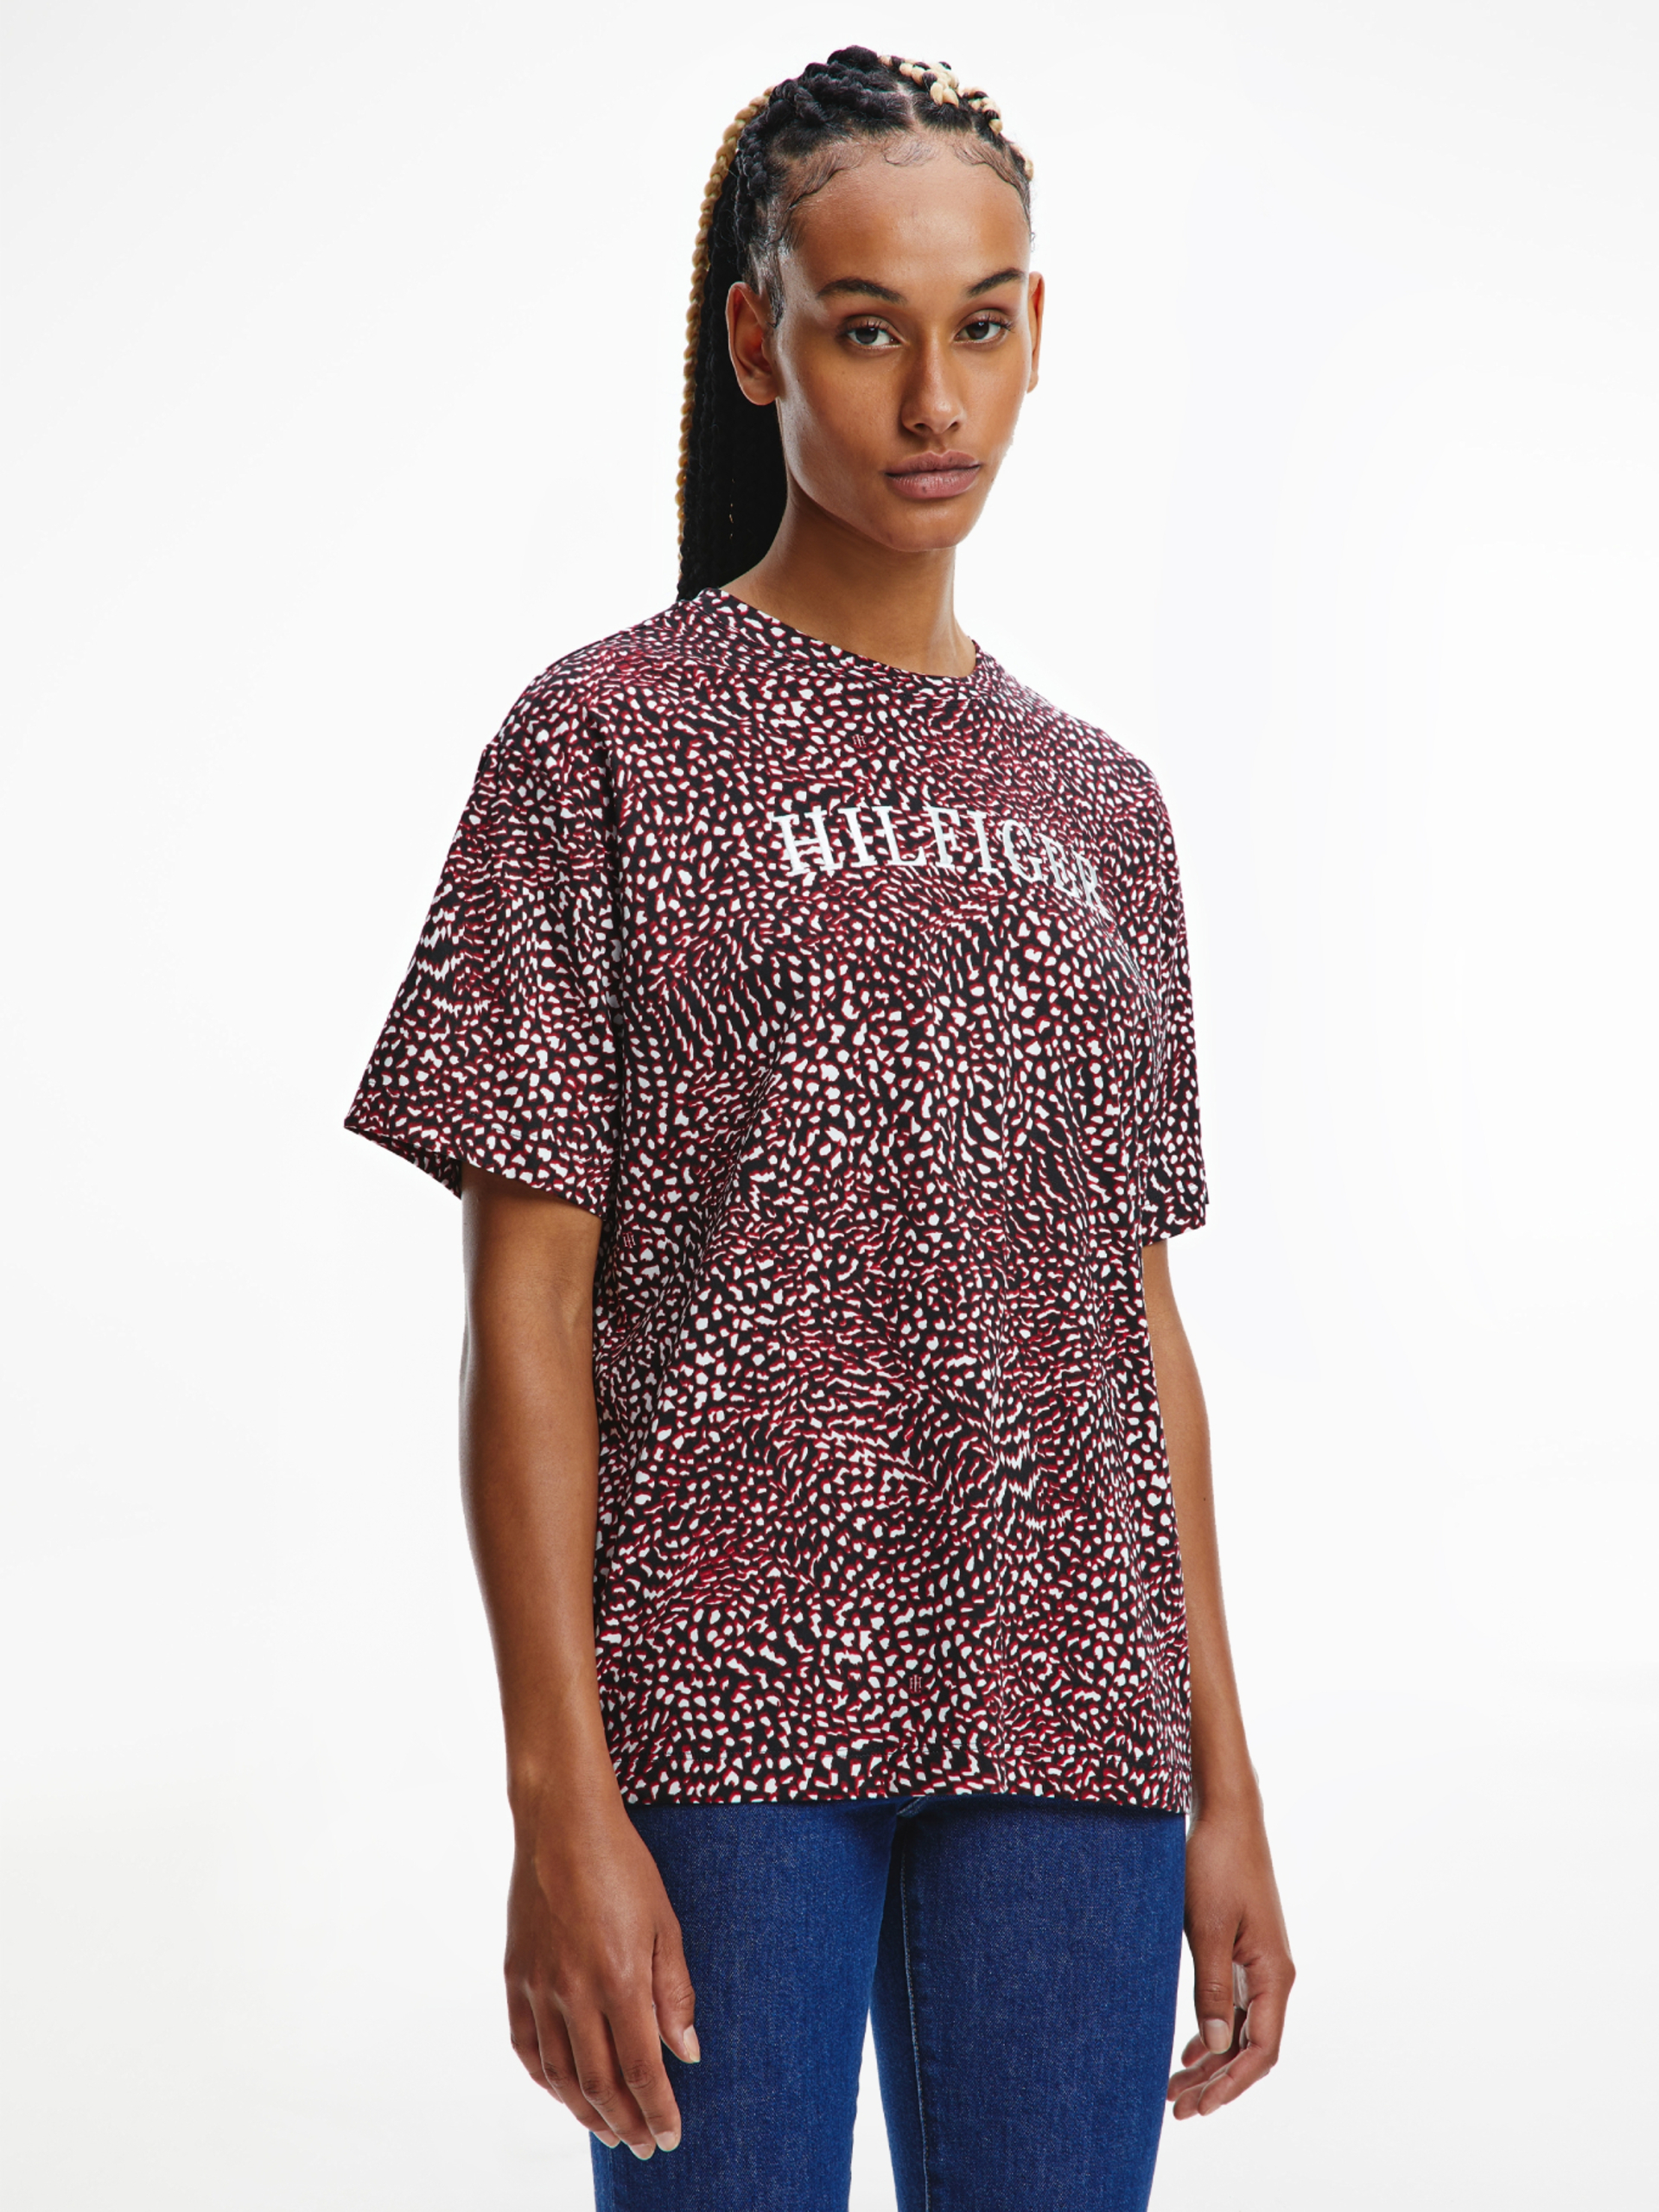 Tommy Hilfiger dámské vzorované tričko - S (01K)